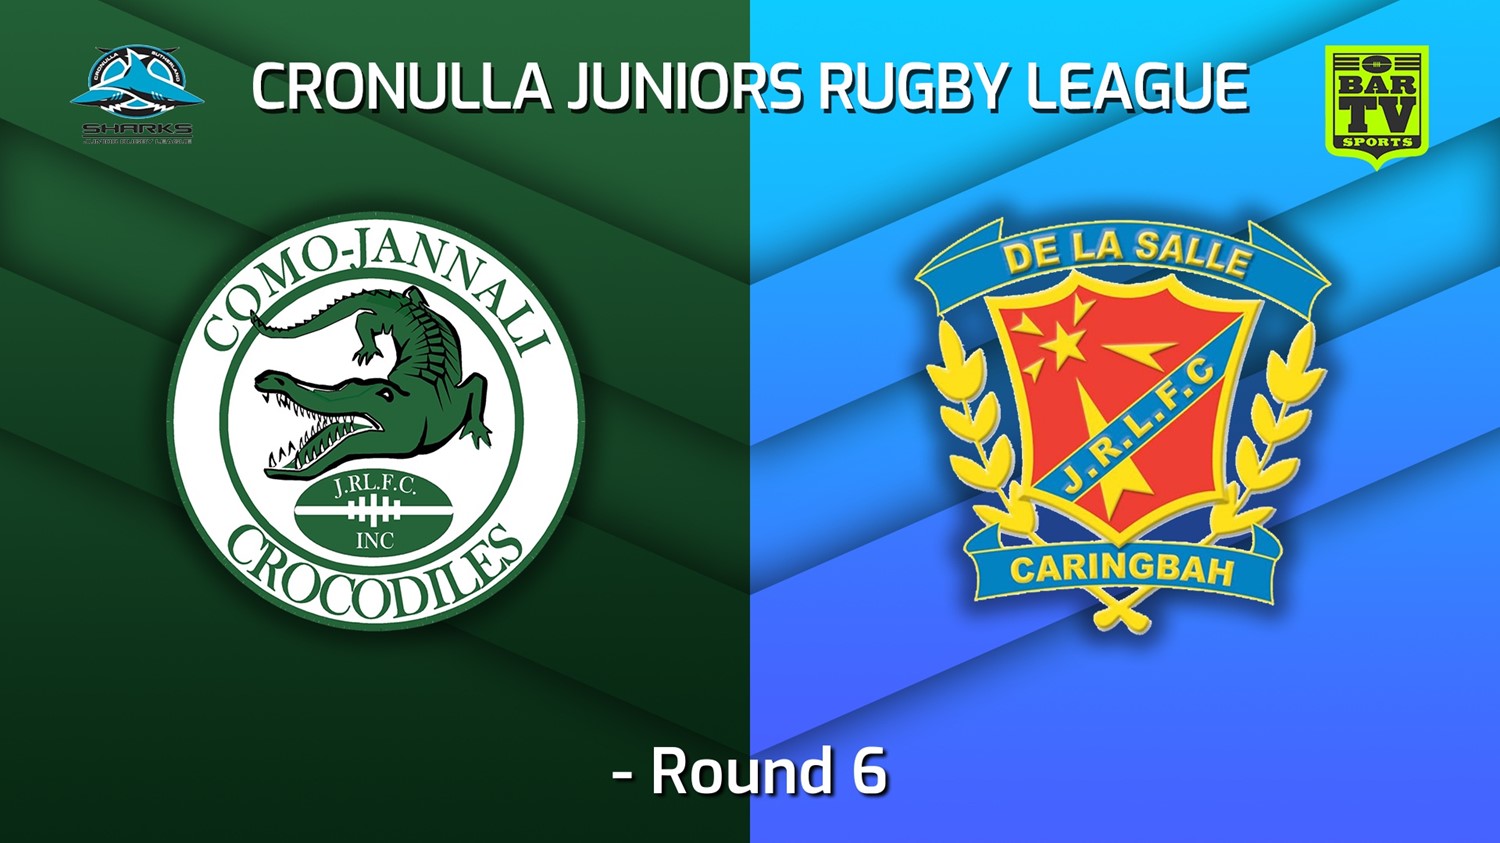 220605-Cronulla Juniors -U15 Gold Round 6 - Como Jannali Crocodiles v De La Salle Minigame Slate Image